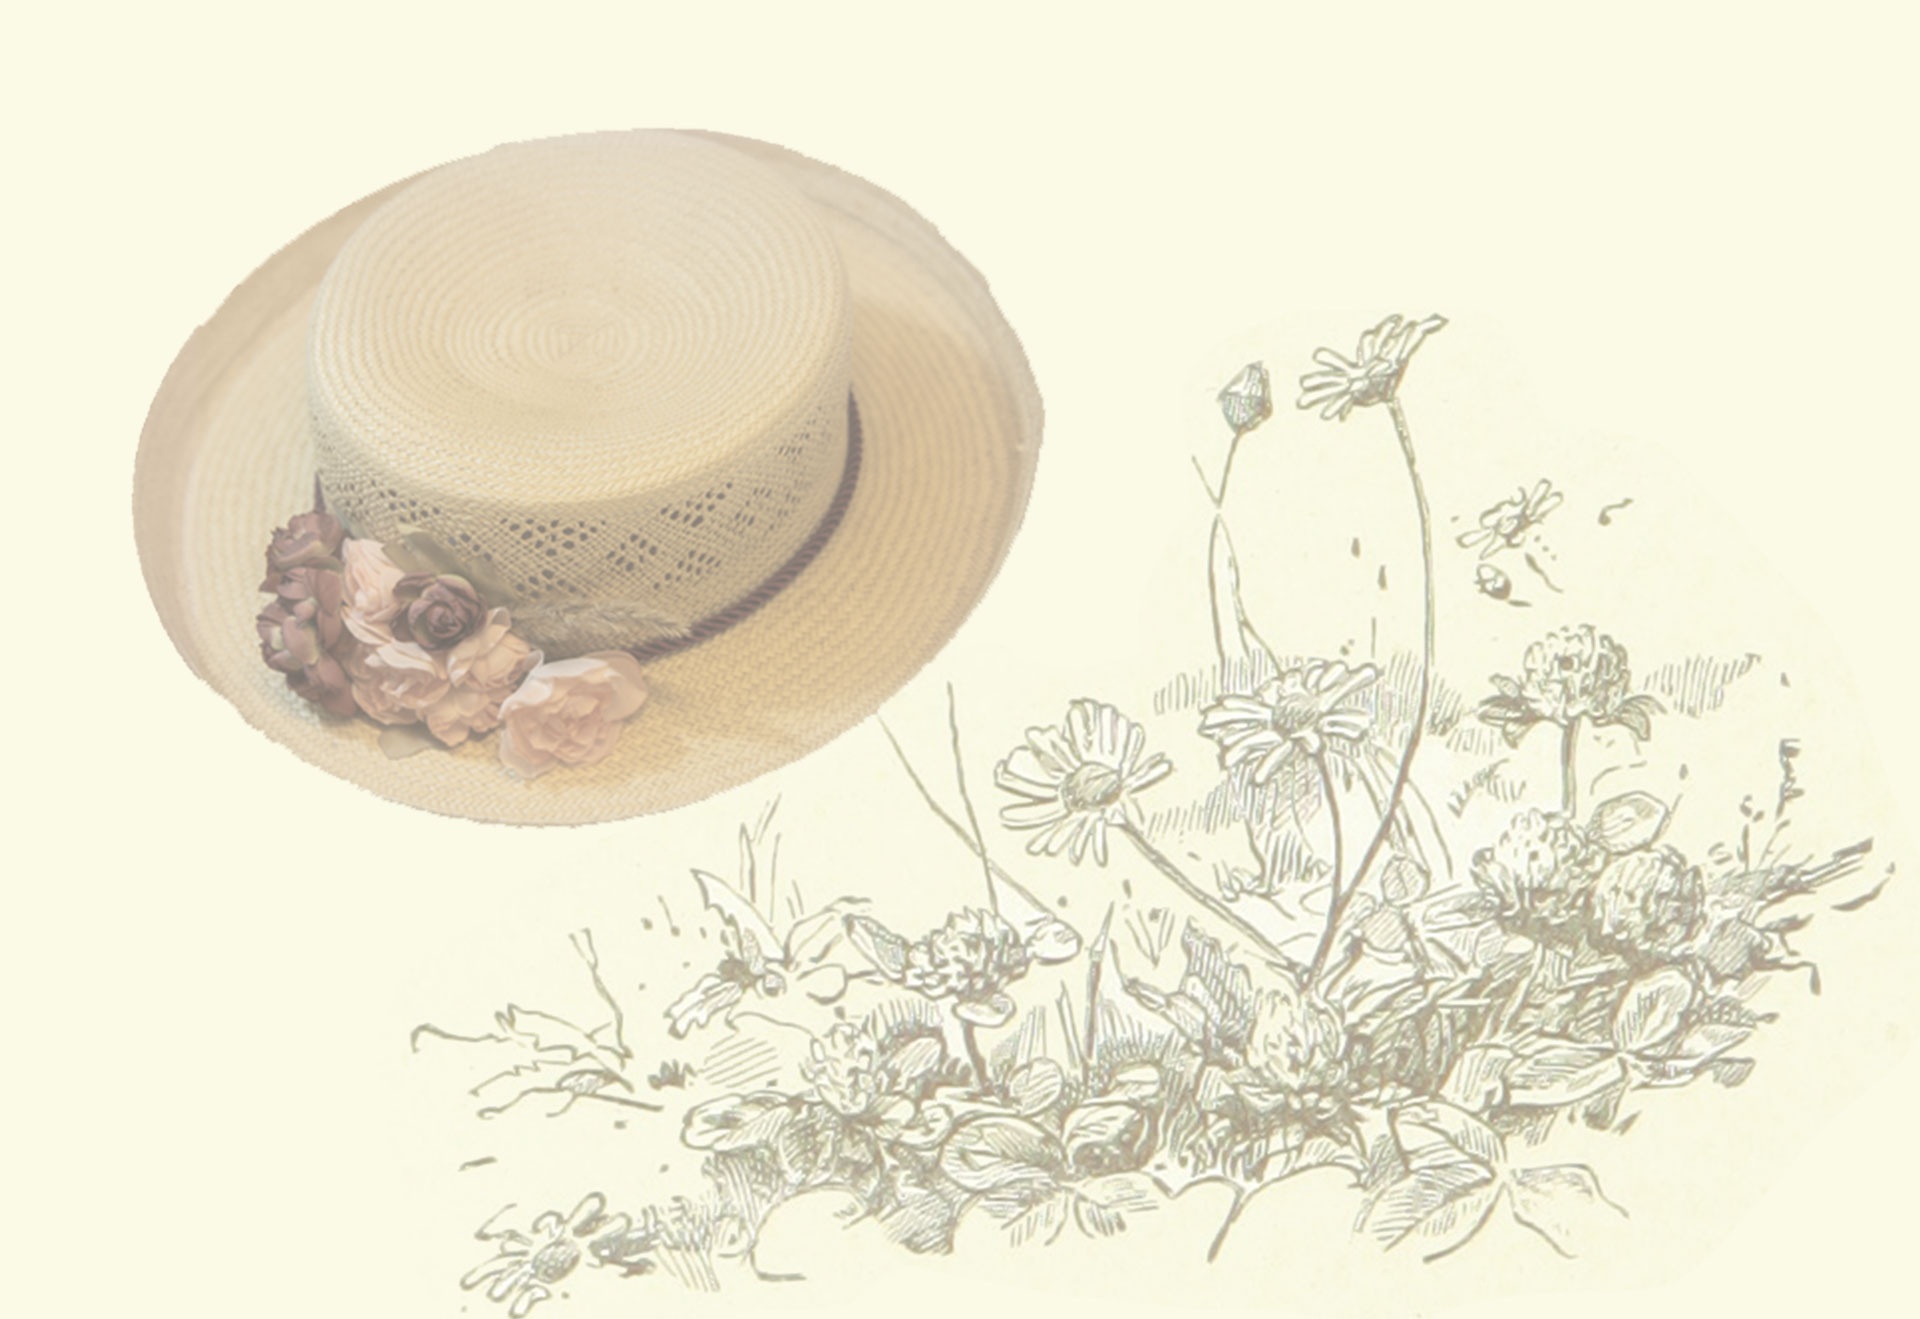 Salutation de fond de chapeau fleuri